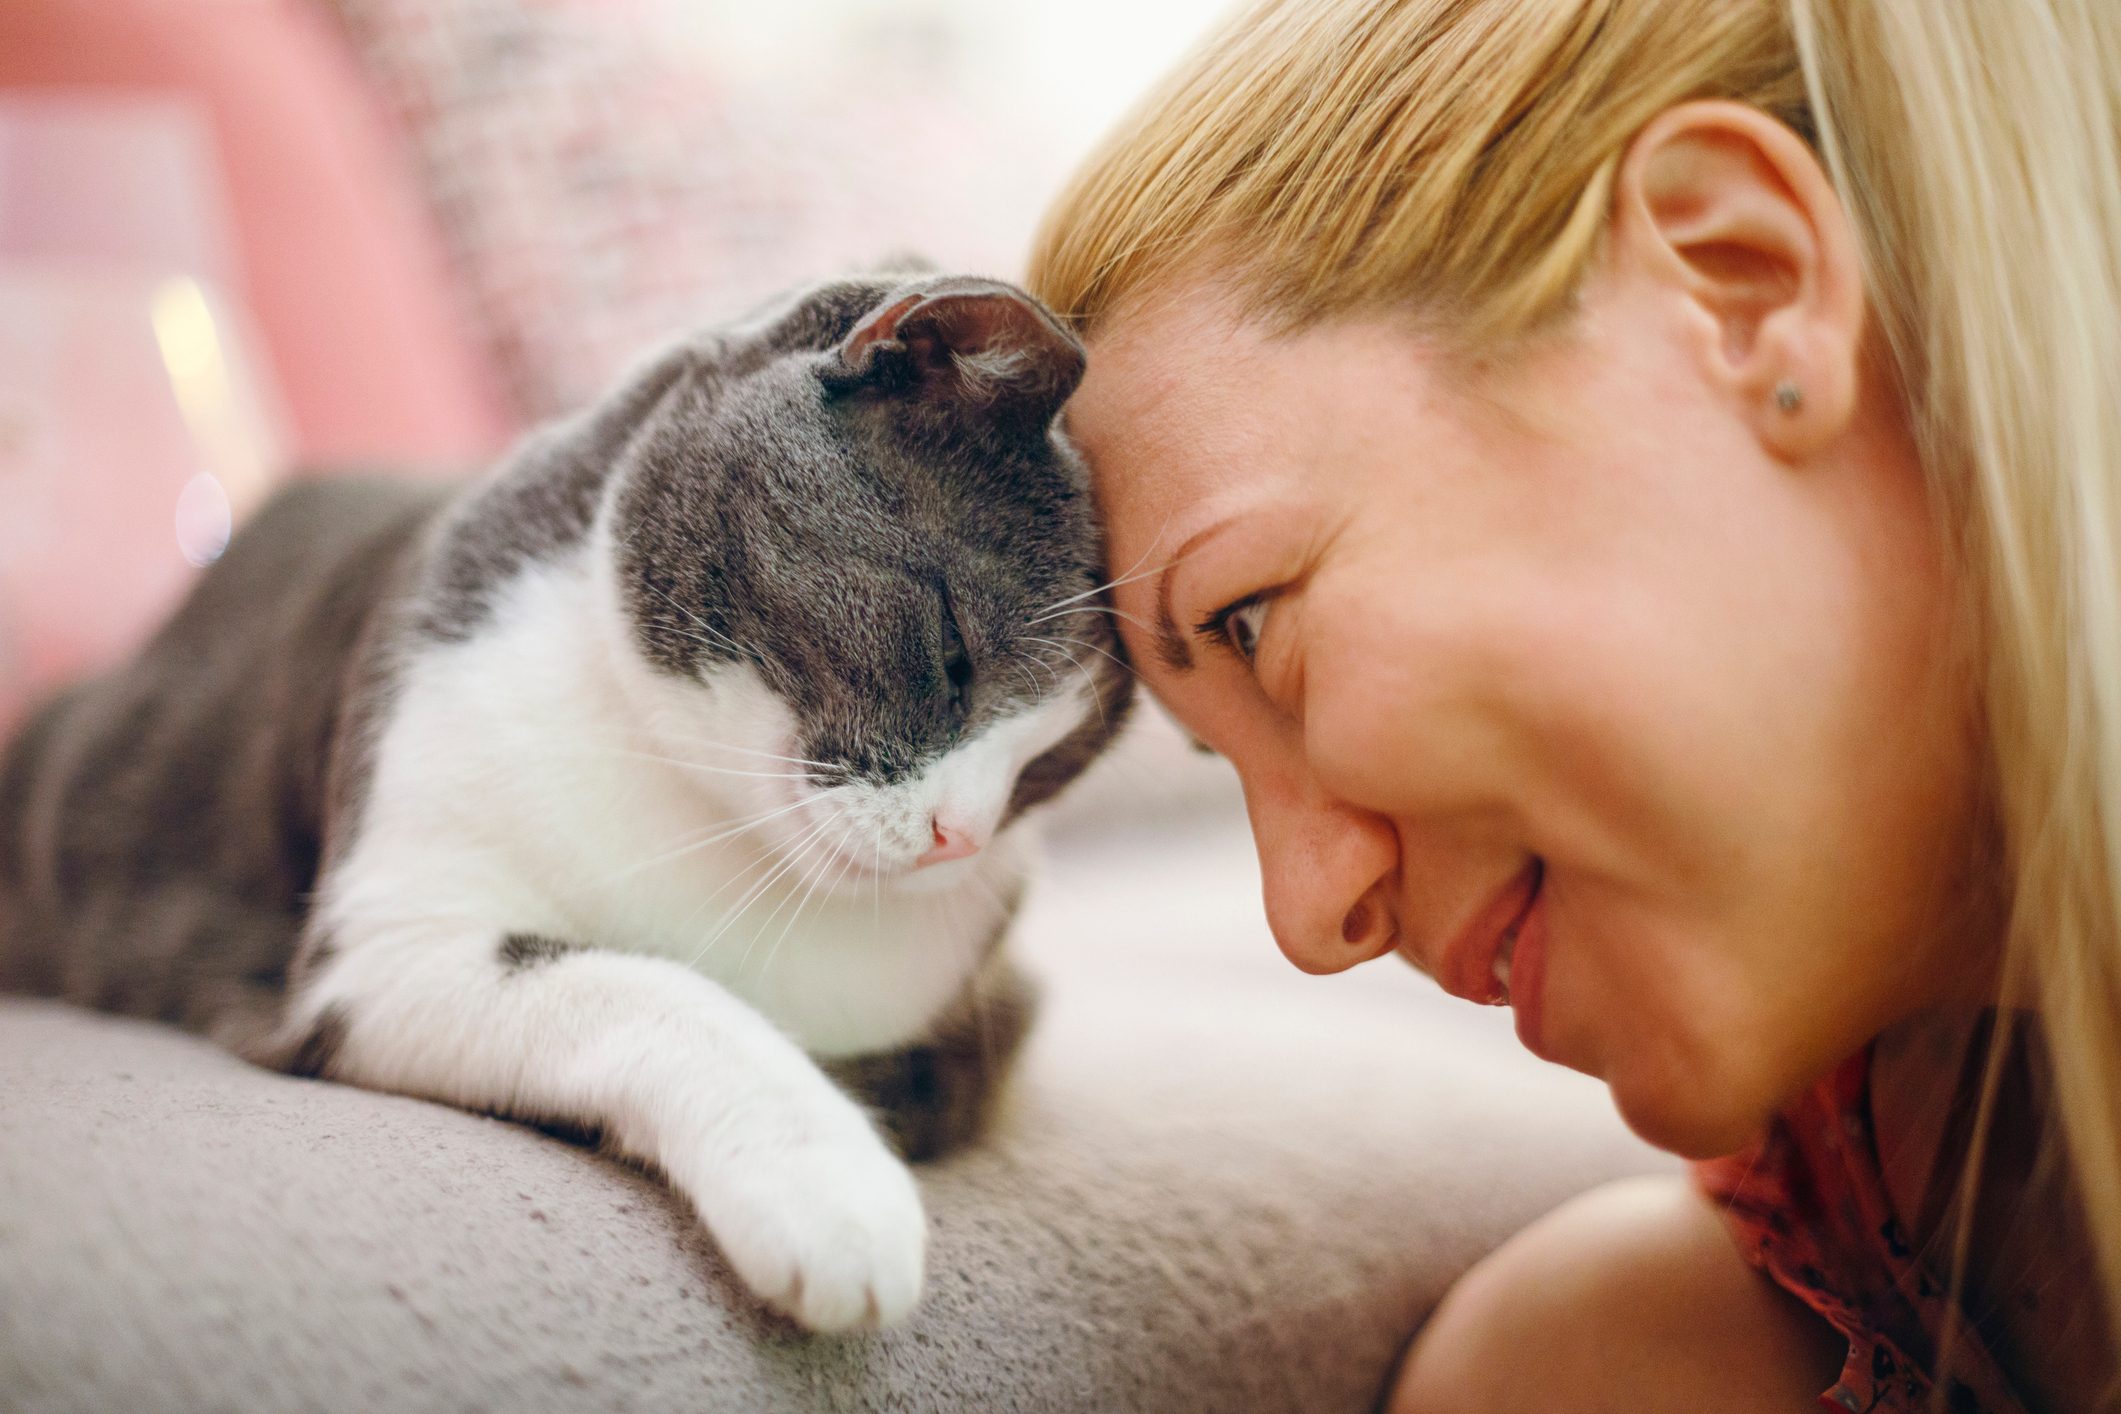 Do cats like baby talk?